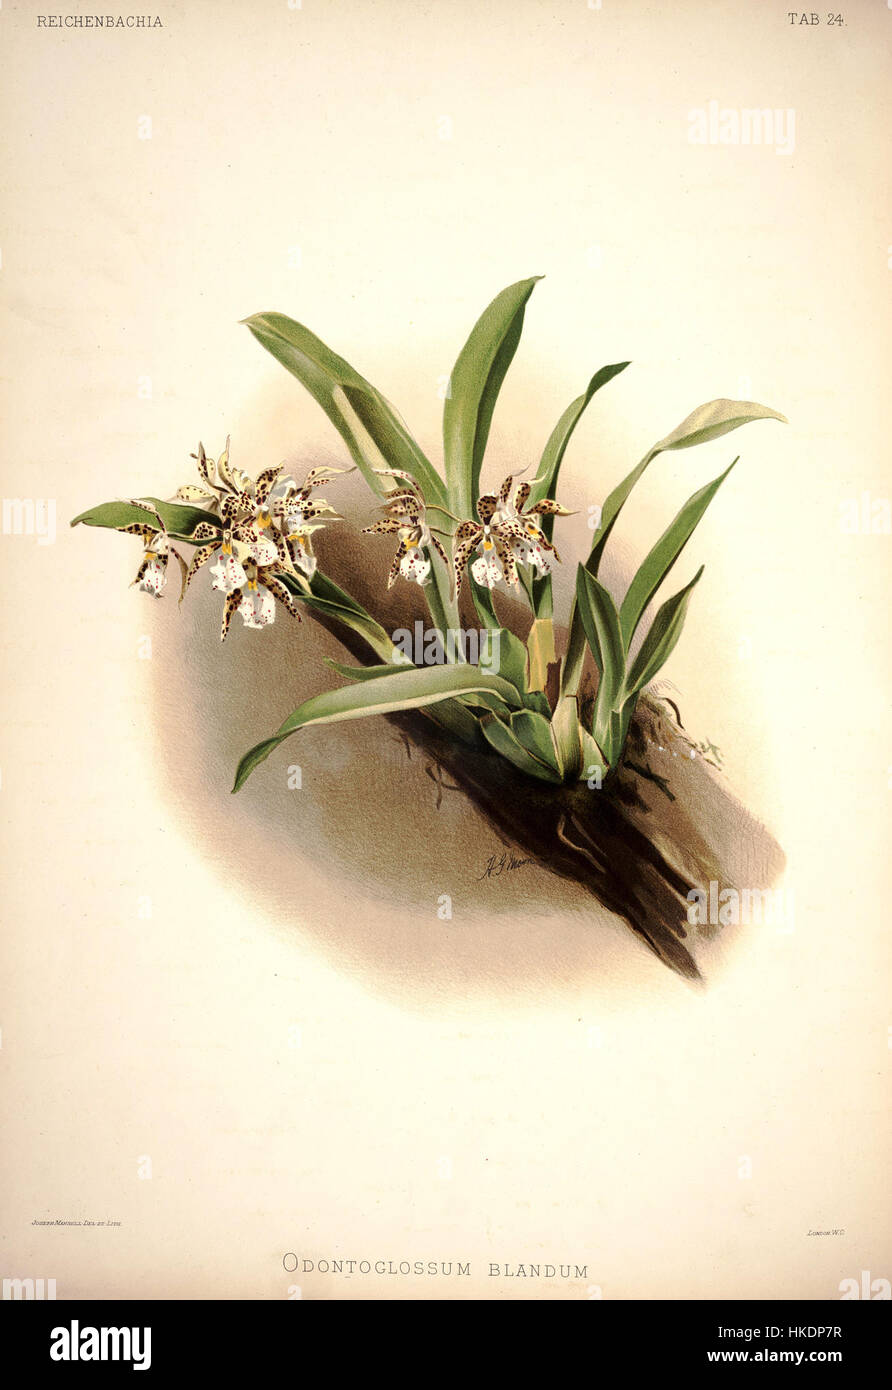 Frederick Sander Reichenbachia placa I 24 (1888) Odontoglossum blandum Foto de stock